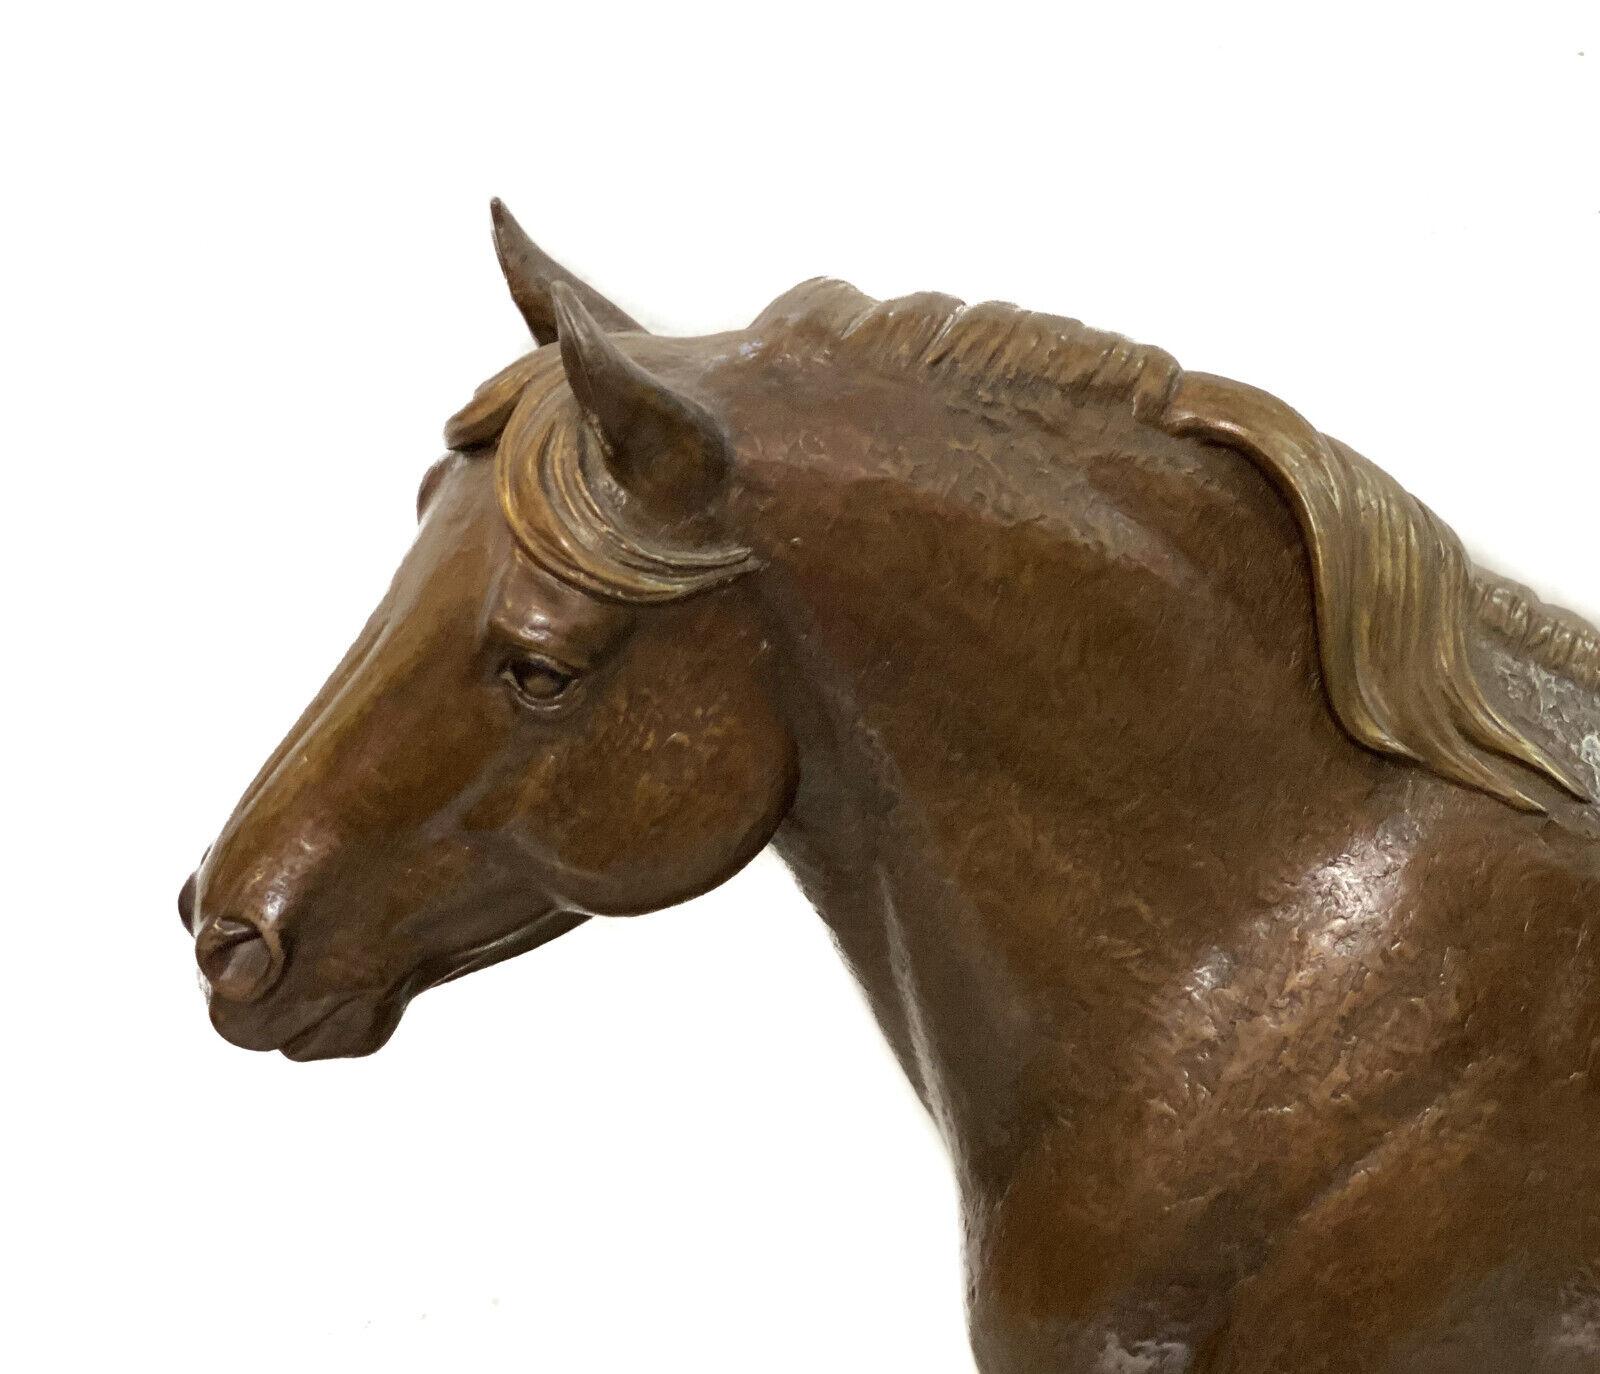 Marilyn Newmark Sculpture de cheval en bronze, Herculean Edition limitée à 5 exemplaires, 1994

La sculpture représente un étalon trotteur au modèle réaliste, à la peau texturée et même patinée, assis sur une base en bois. Les plaques de